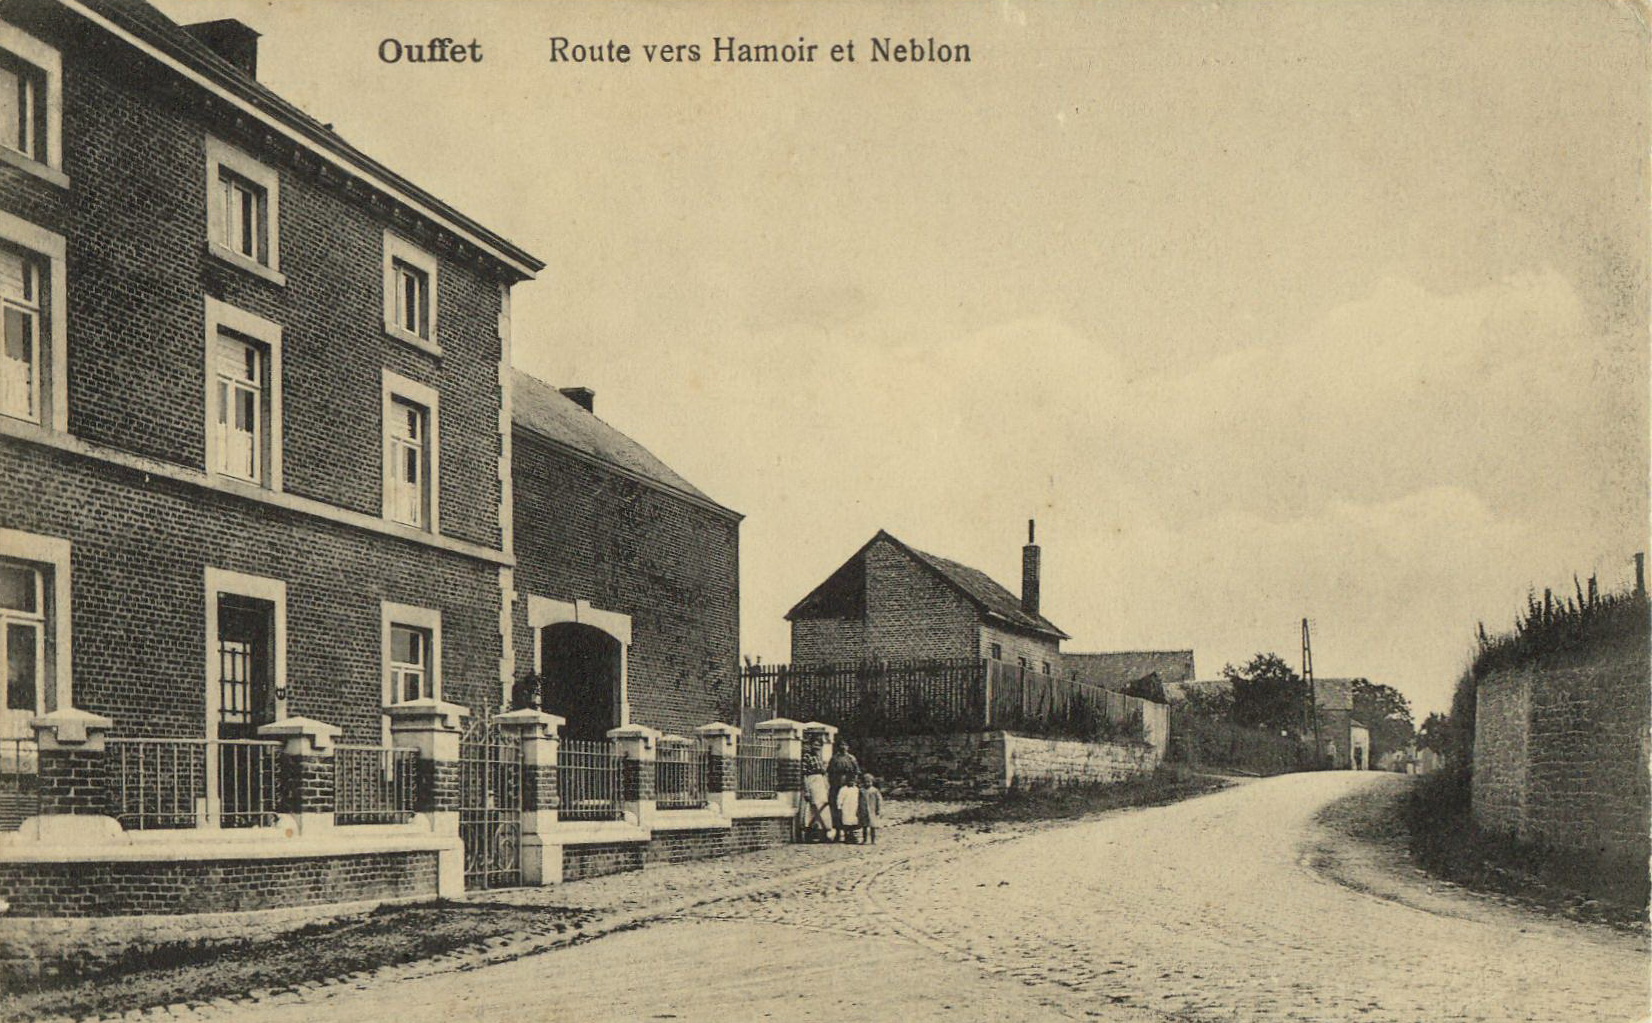 Ouffet - route vers Hamoir et Neblon